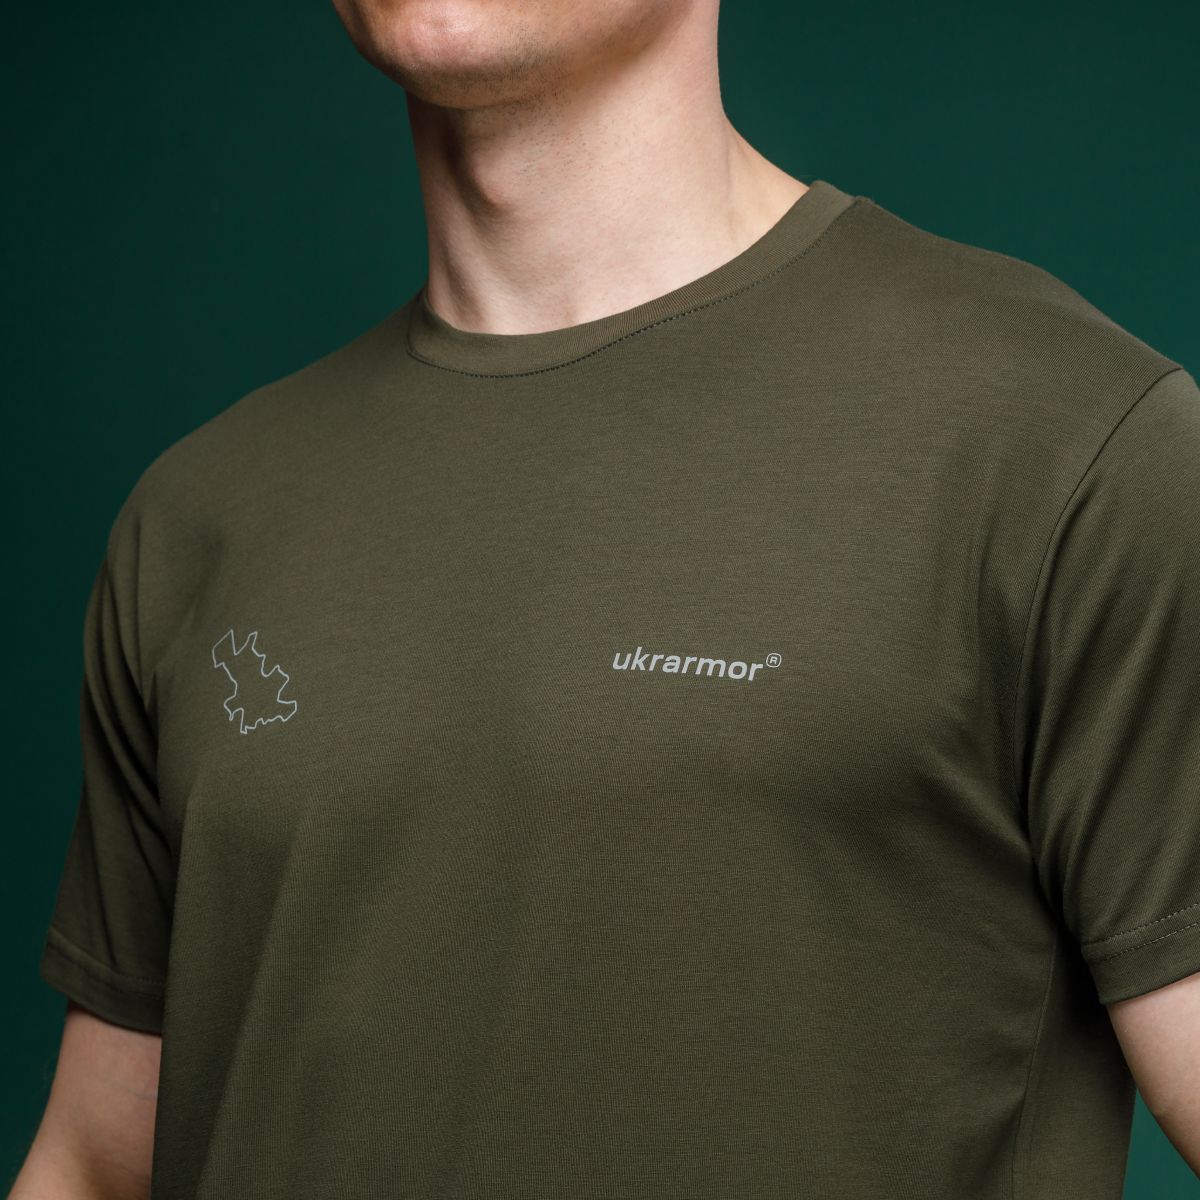 Базовая футболка Military T-Shirt. Авдеевка. Топографическая карта. Хлопок, олива. Размер S 3